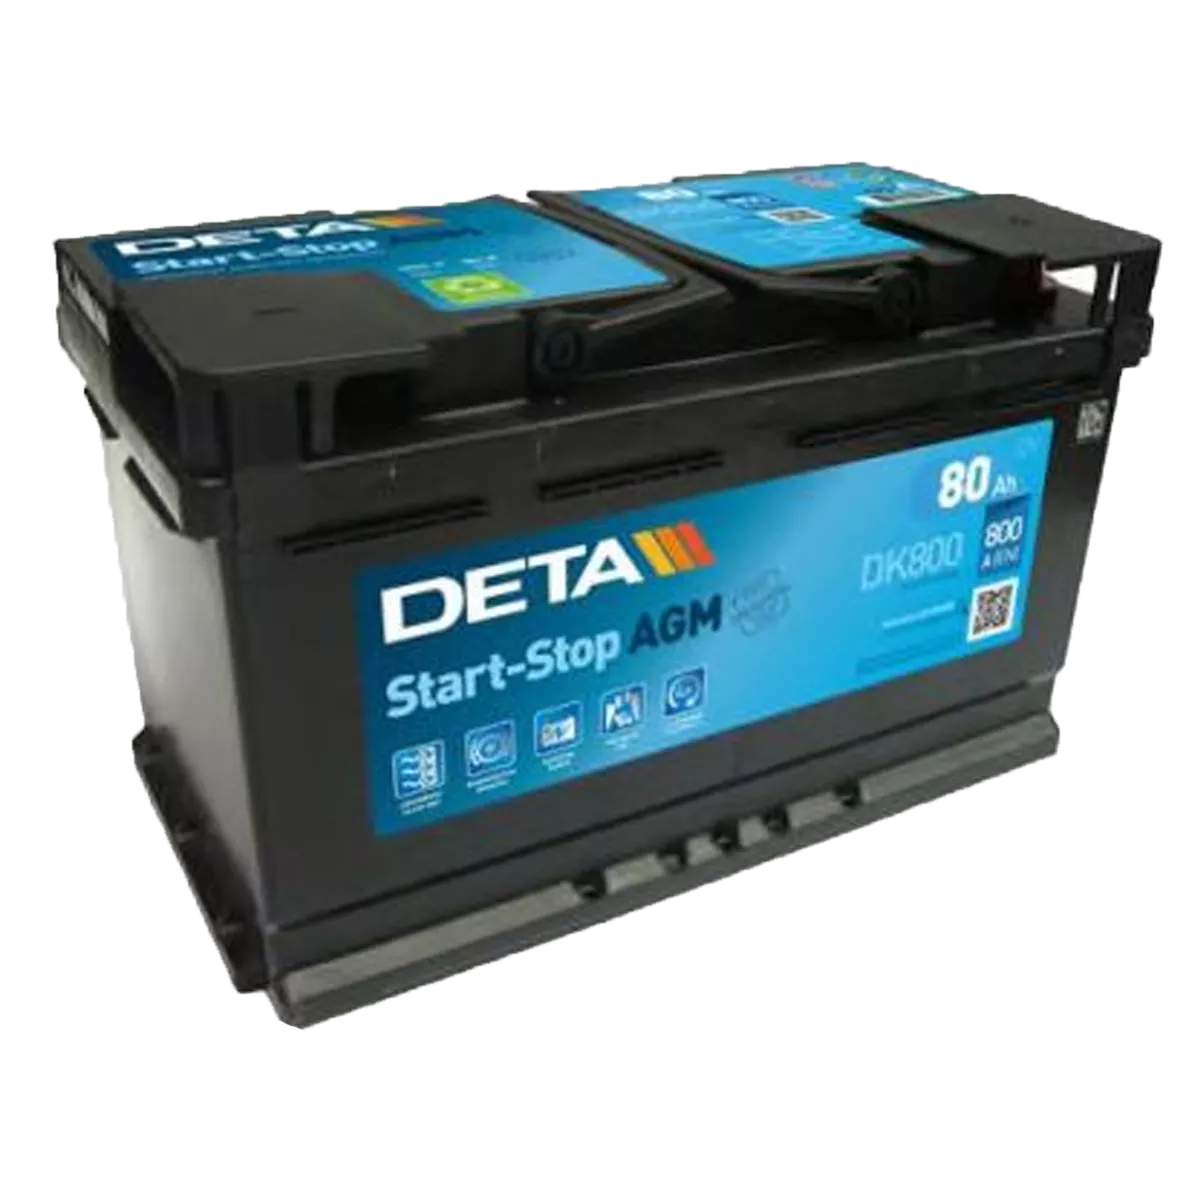 Автомобильный аккумулятор DETA 6CT-80Аh АзЕ AGM Start-Stop (DK800)